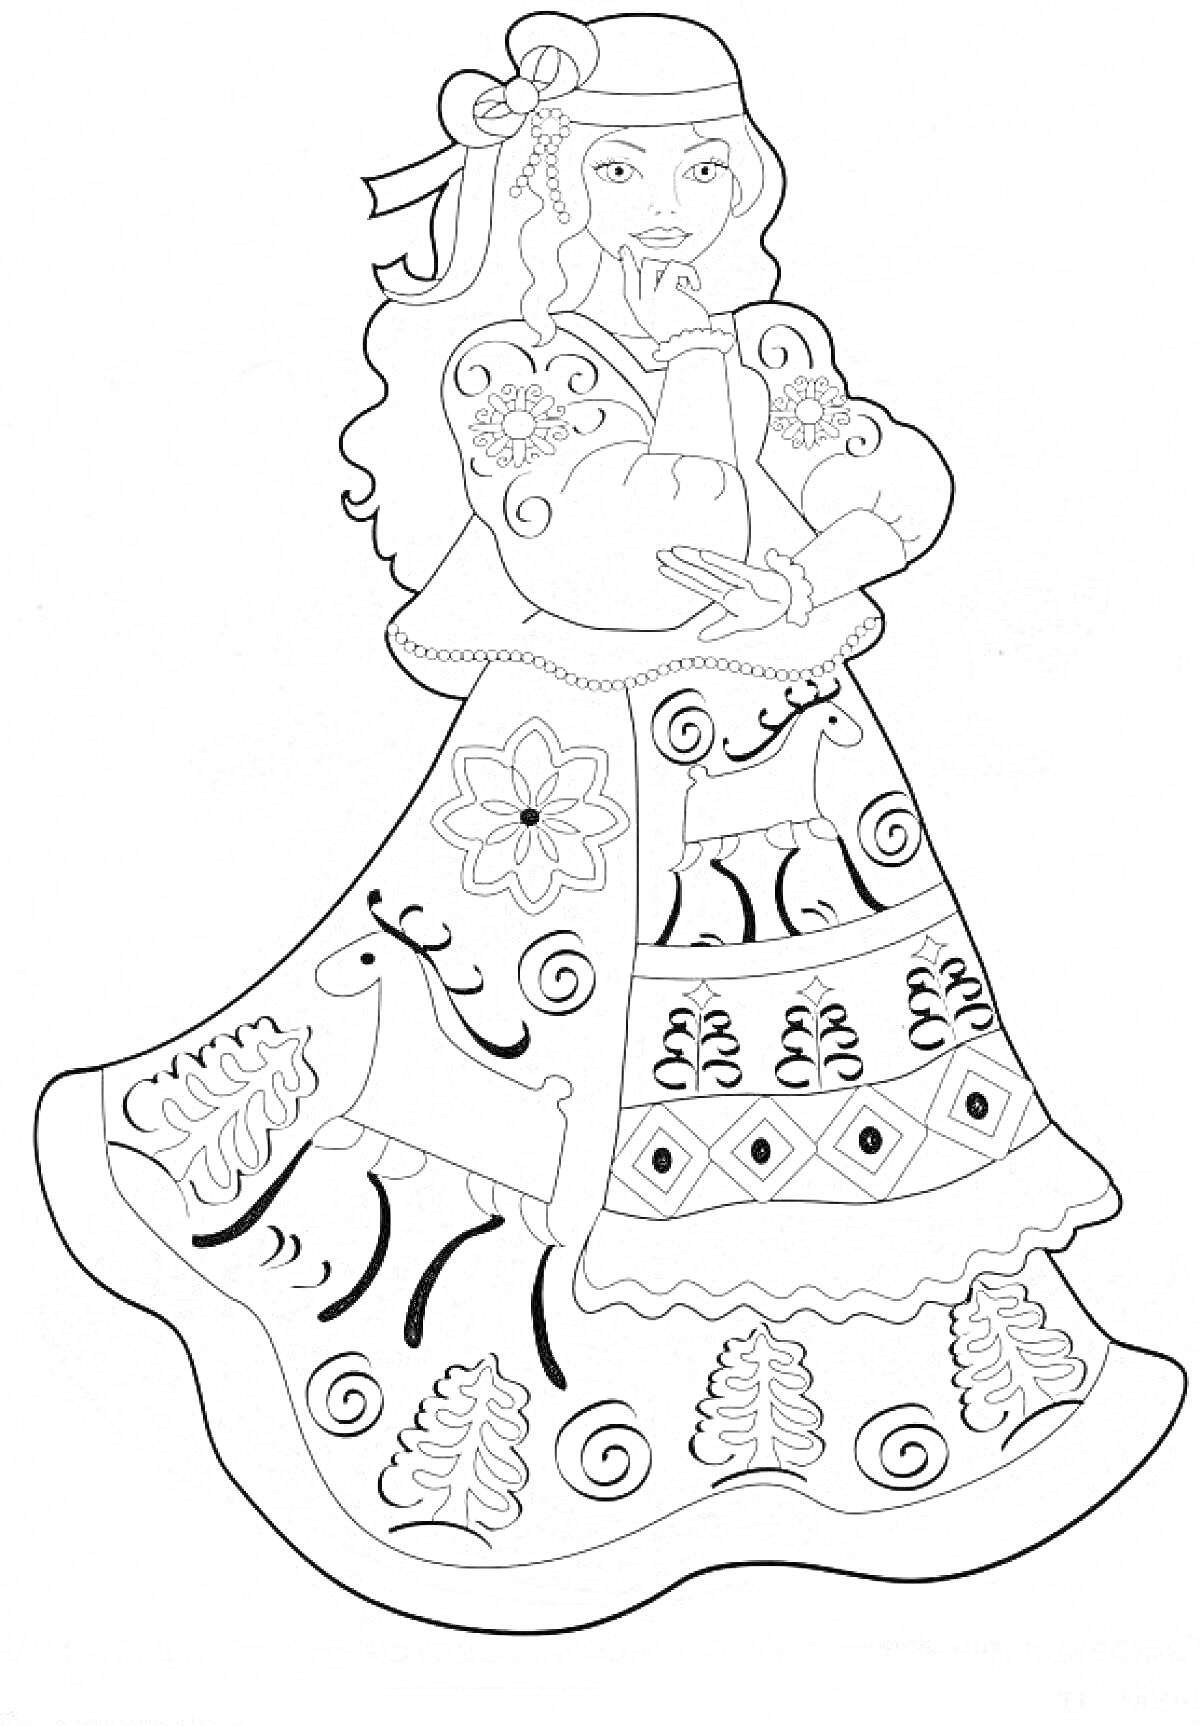 Раскраска Барышня в национальном костюме с вышивкой, оленем и цветами на платье